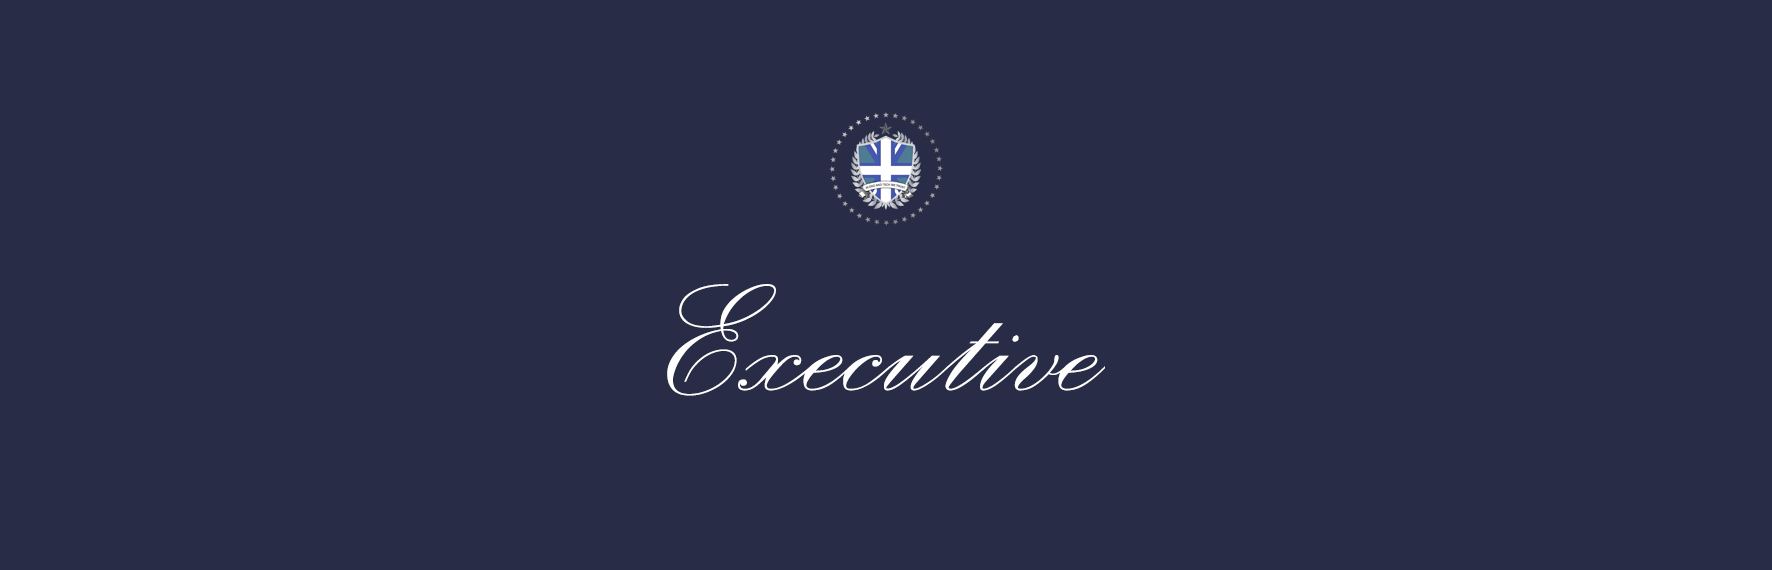 executive.png